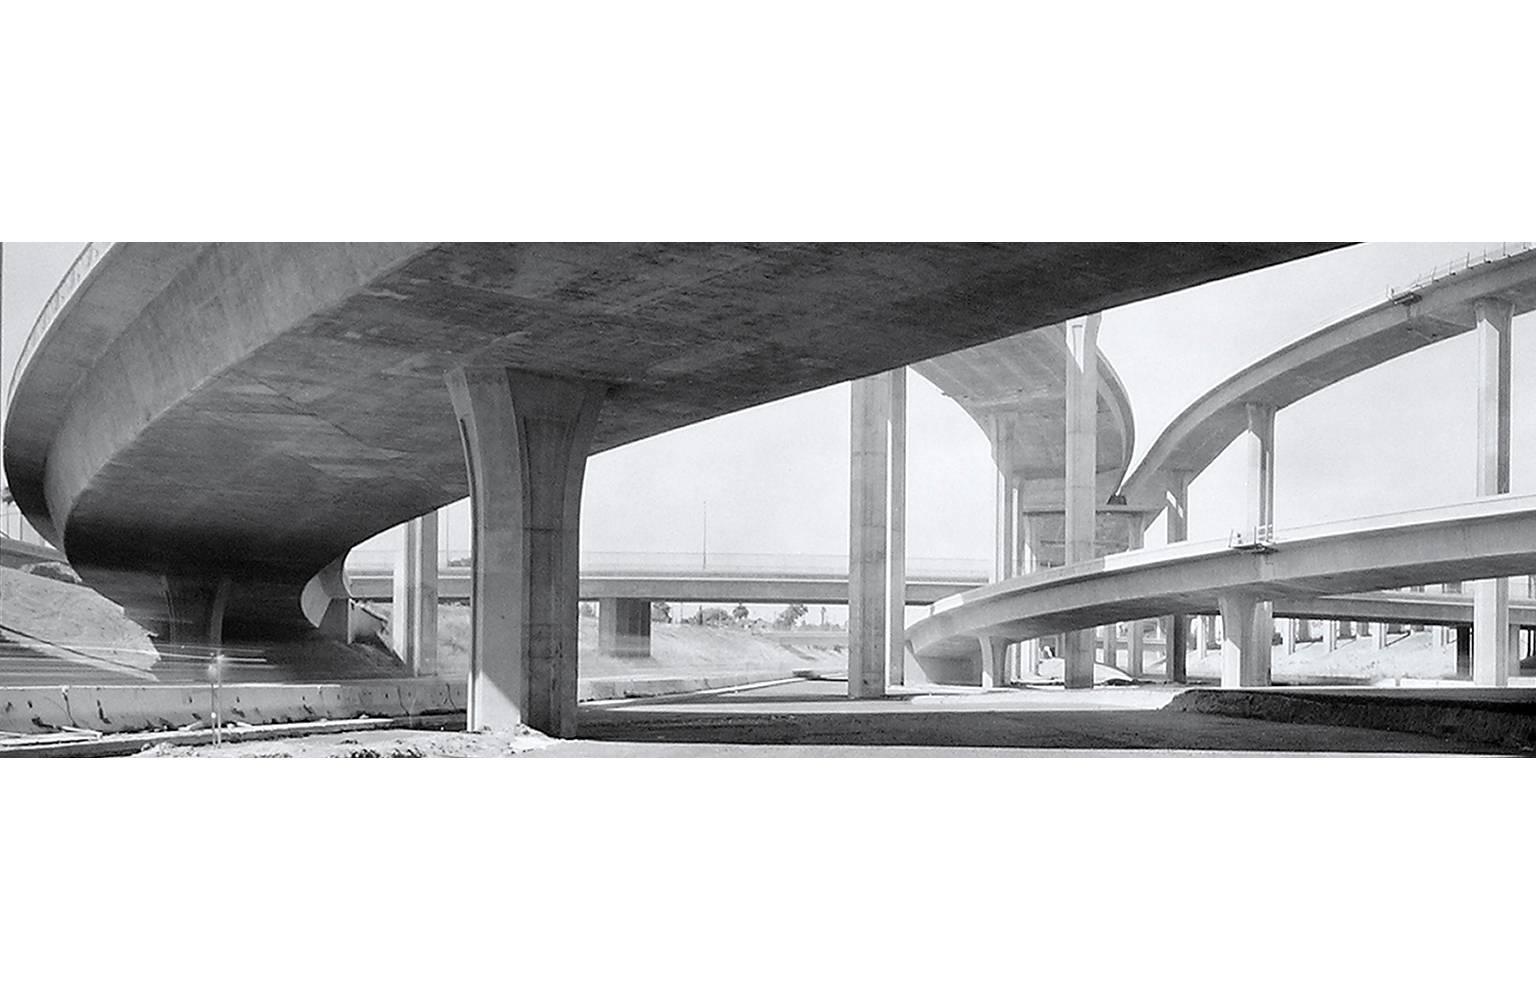 LA Freeway - Photograph by Douglas Busch